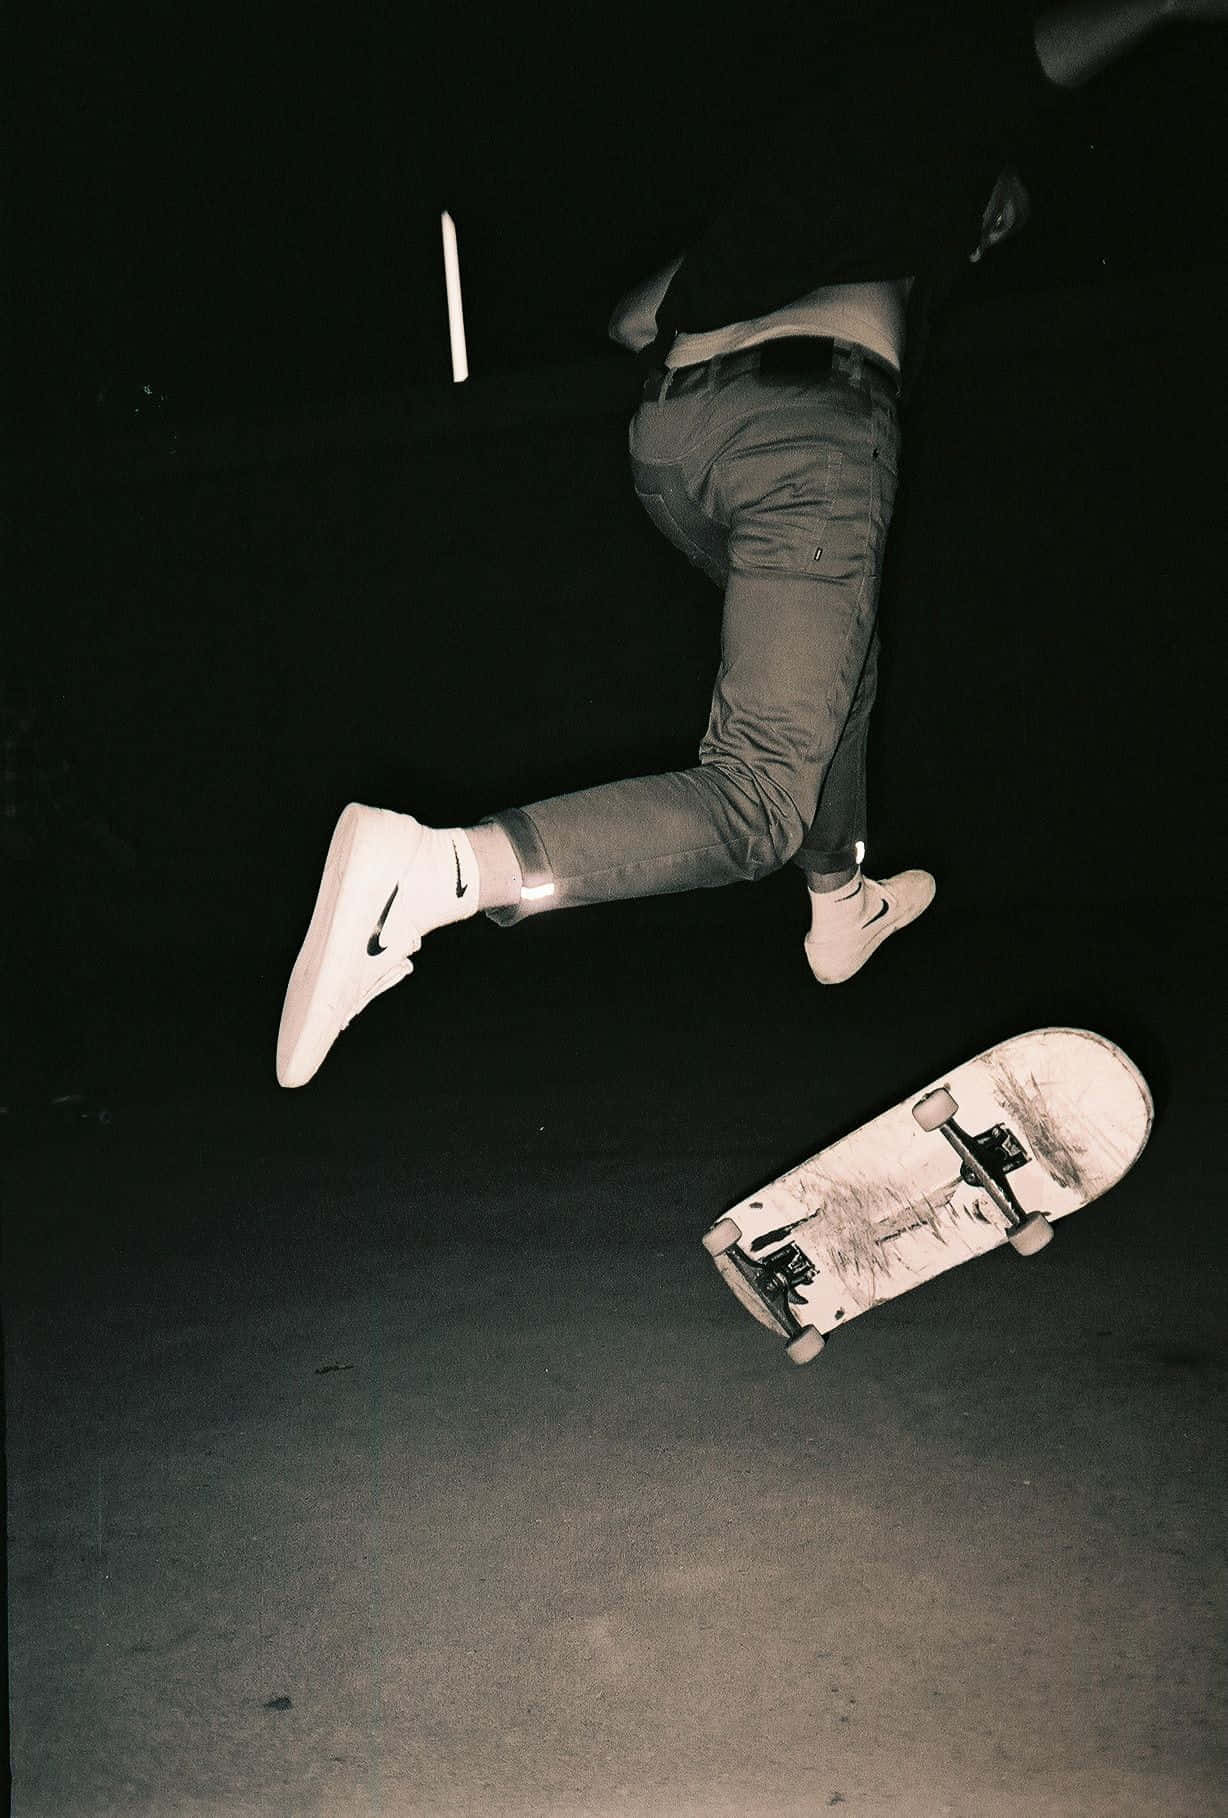 Enman Gör En Skateboardtrick. Wallpaper